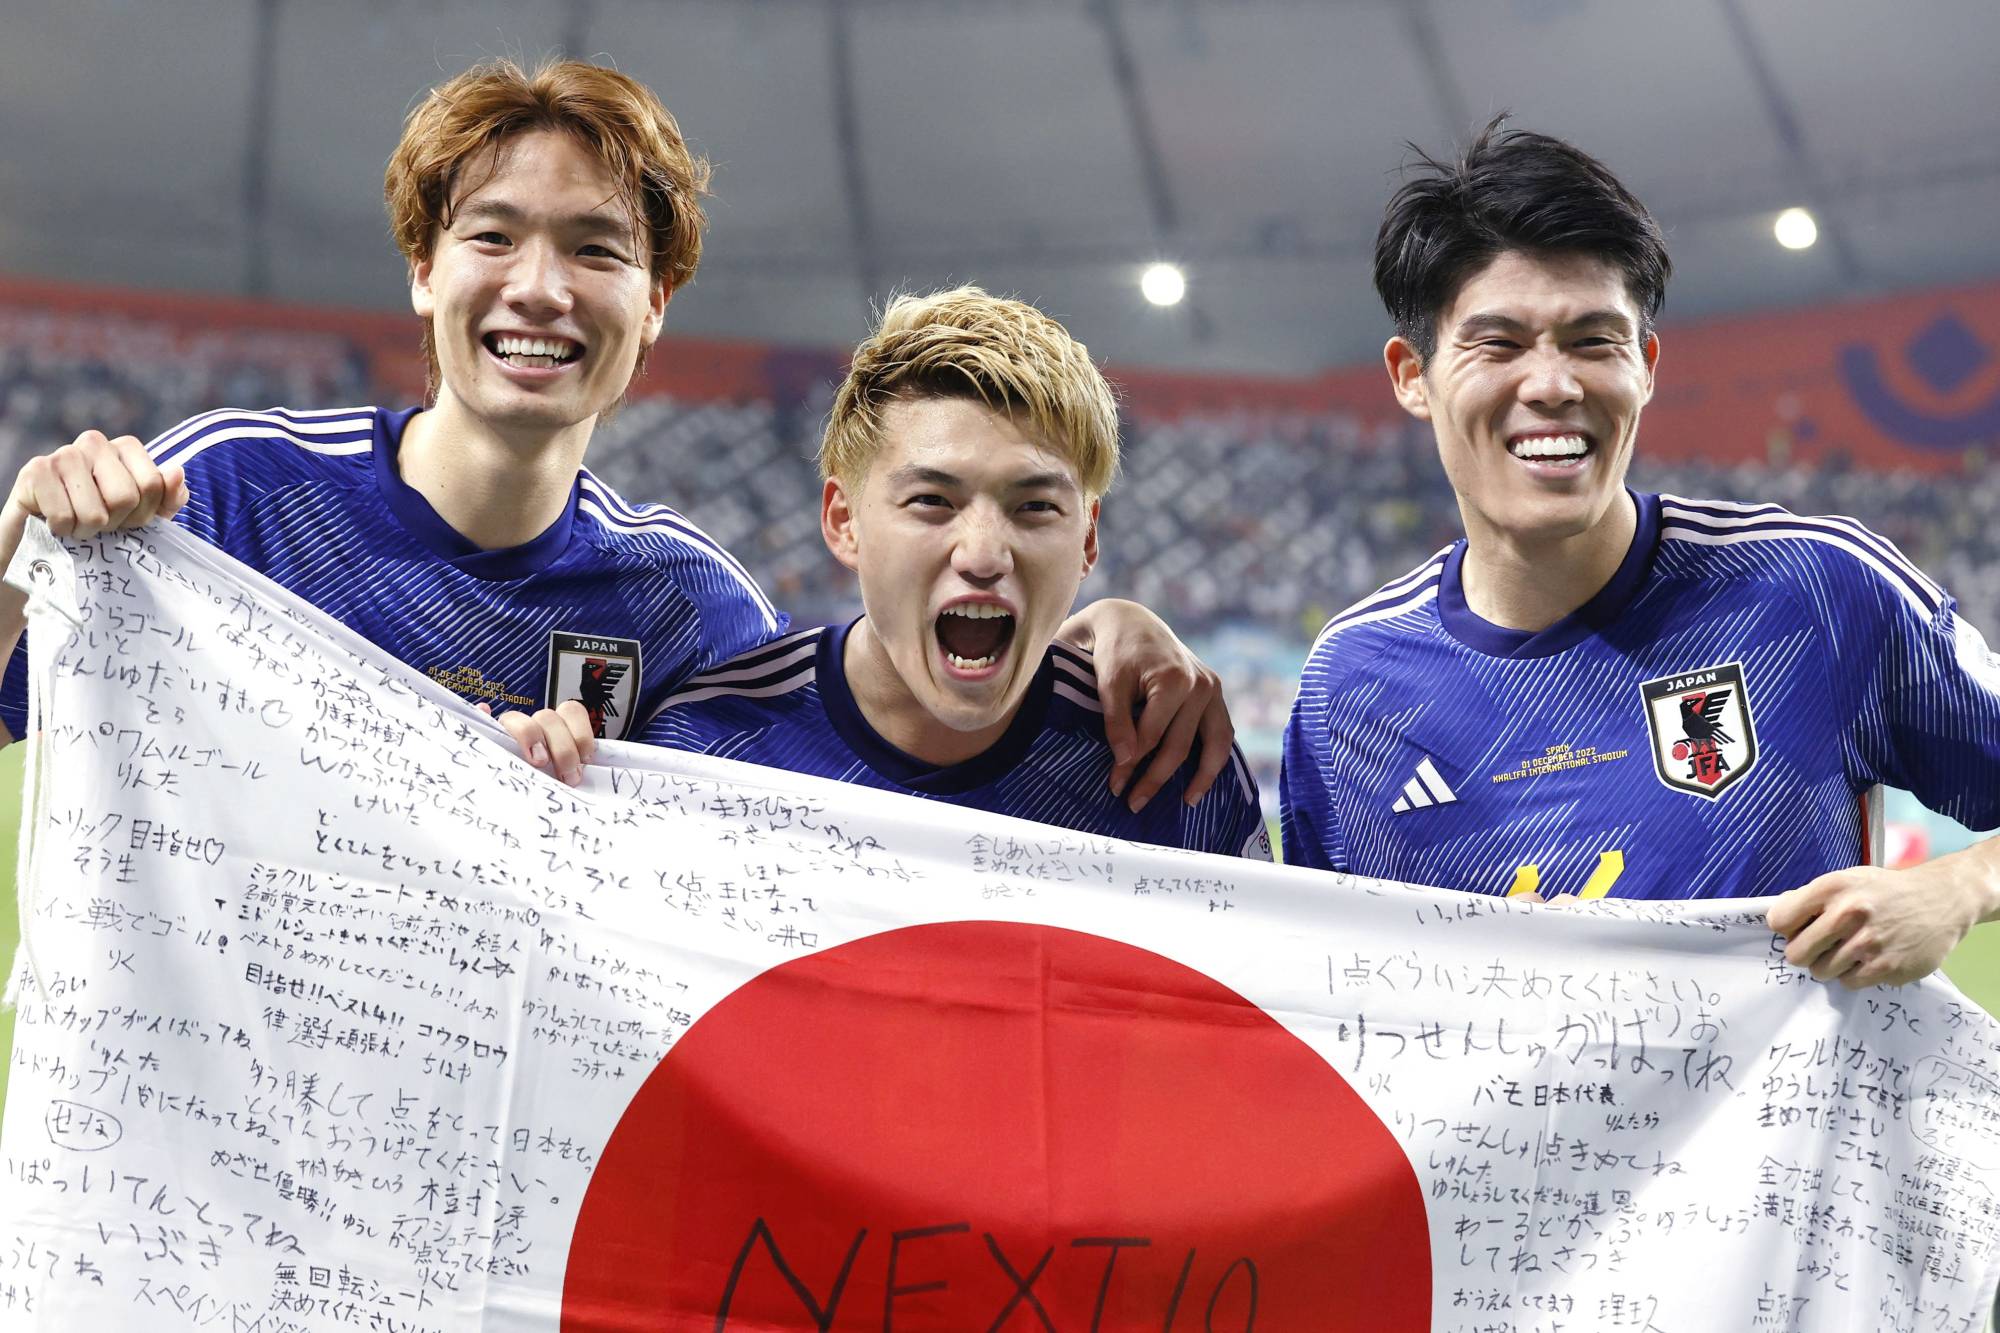 Doha:Japan's Ritsu Doan celebrates after scoring his side's opening goal.